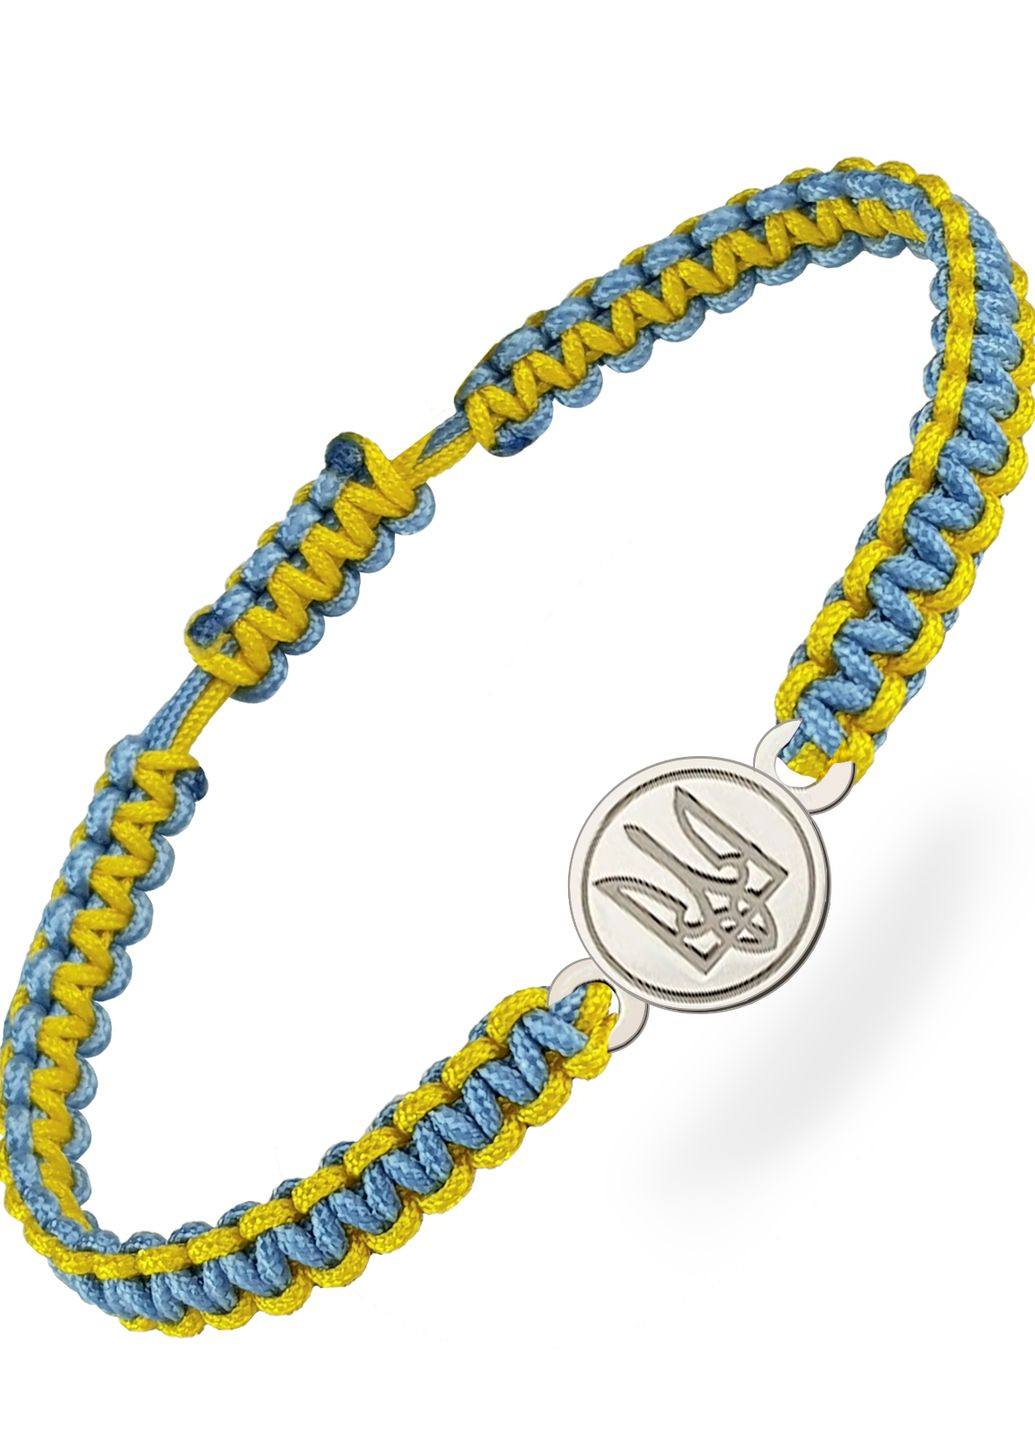 Срібний браслет шамбала Вишиванка нитка жовто-блакитна Герб України регулюється Family Tree Jewelry Line (266903764)